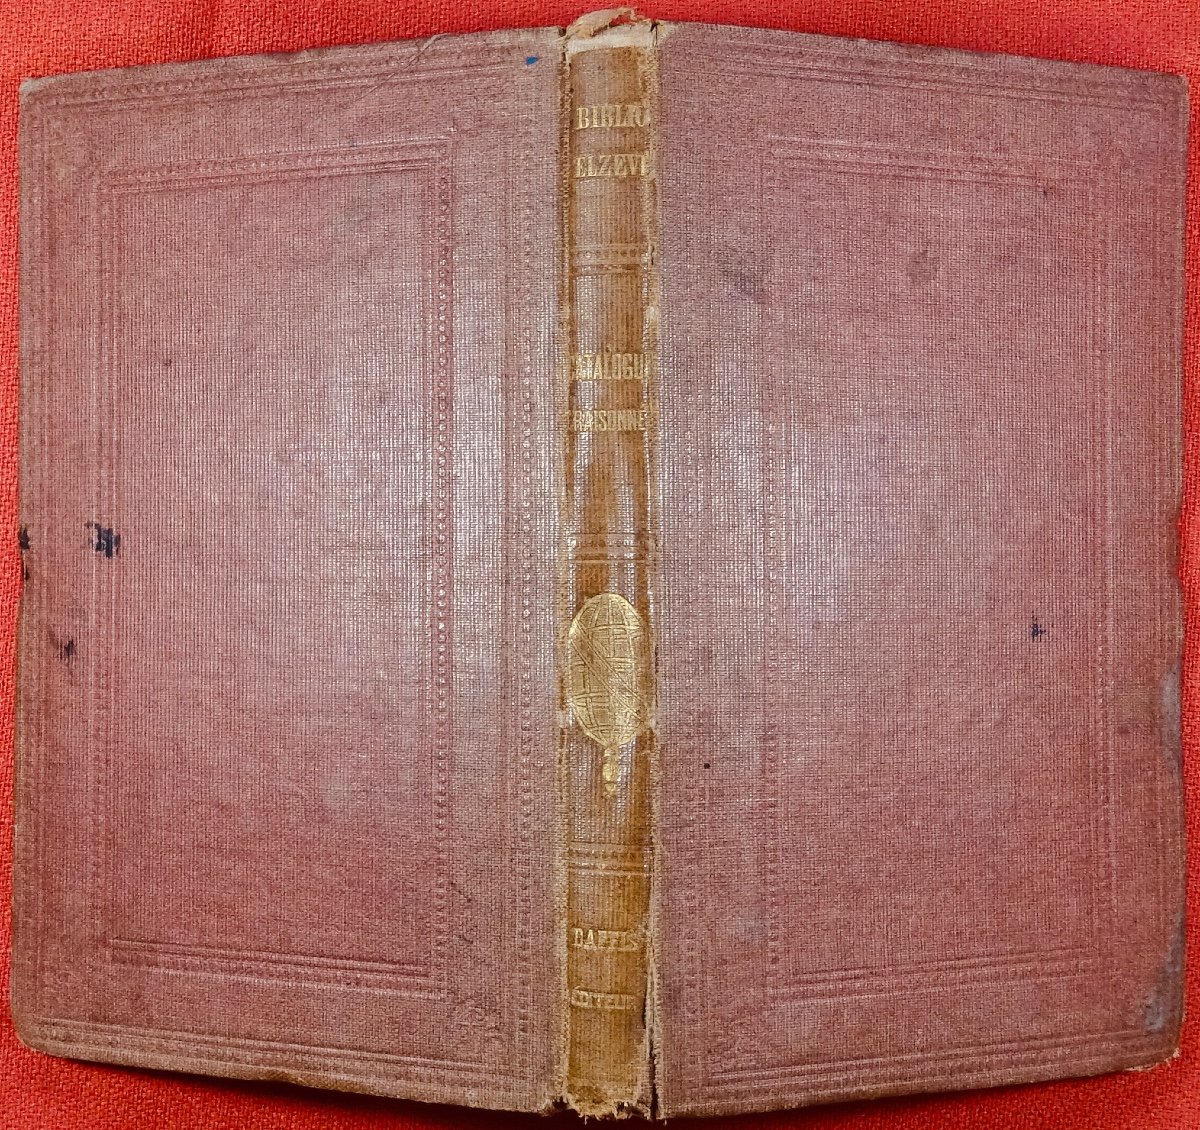 Catalogue Raisonné De La Bibliothèque Elzévirienne 1853-1870. Paris, Paul Daffis, 1870.-photo-4